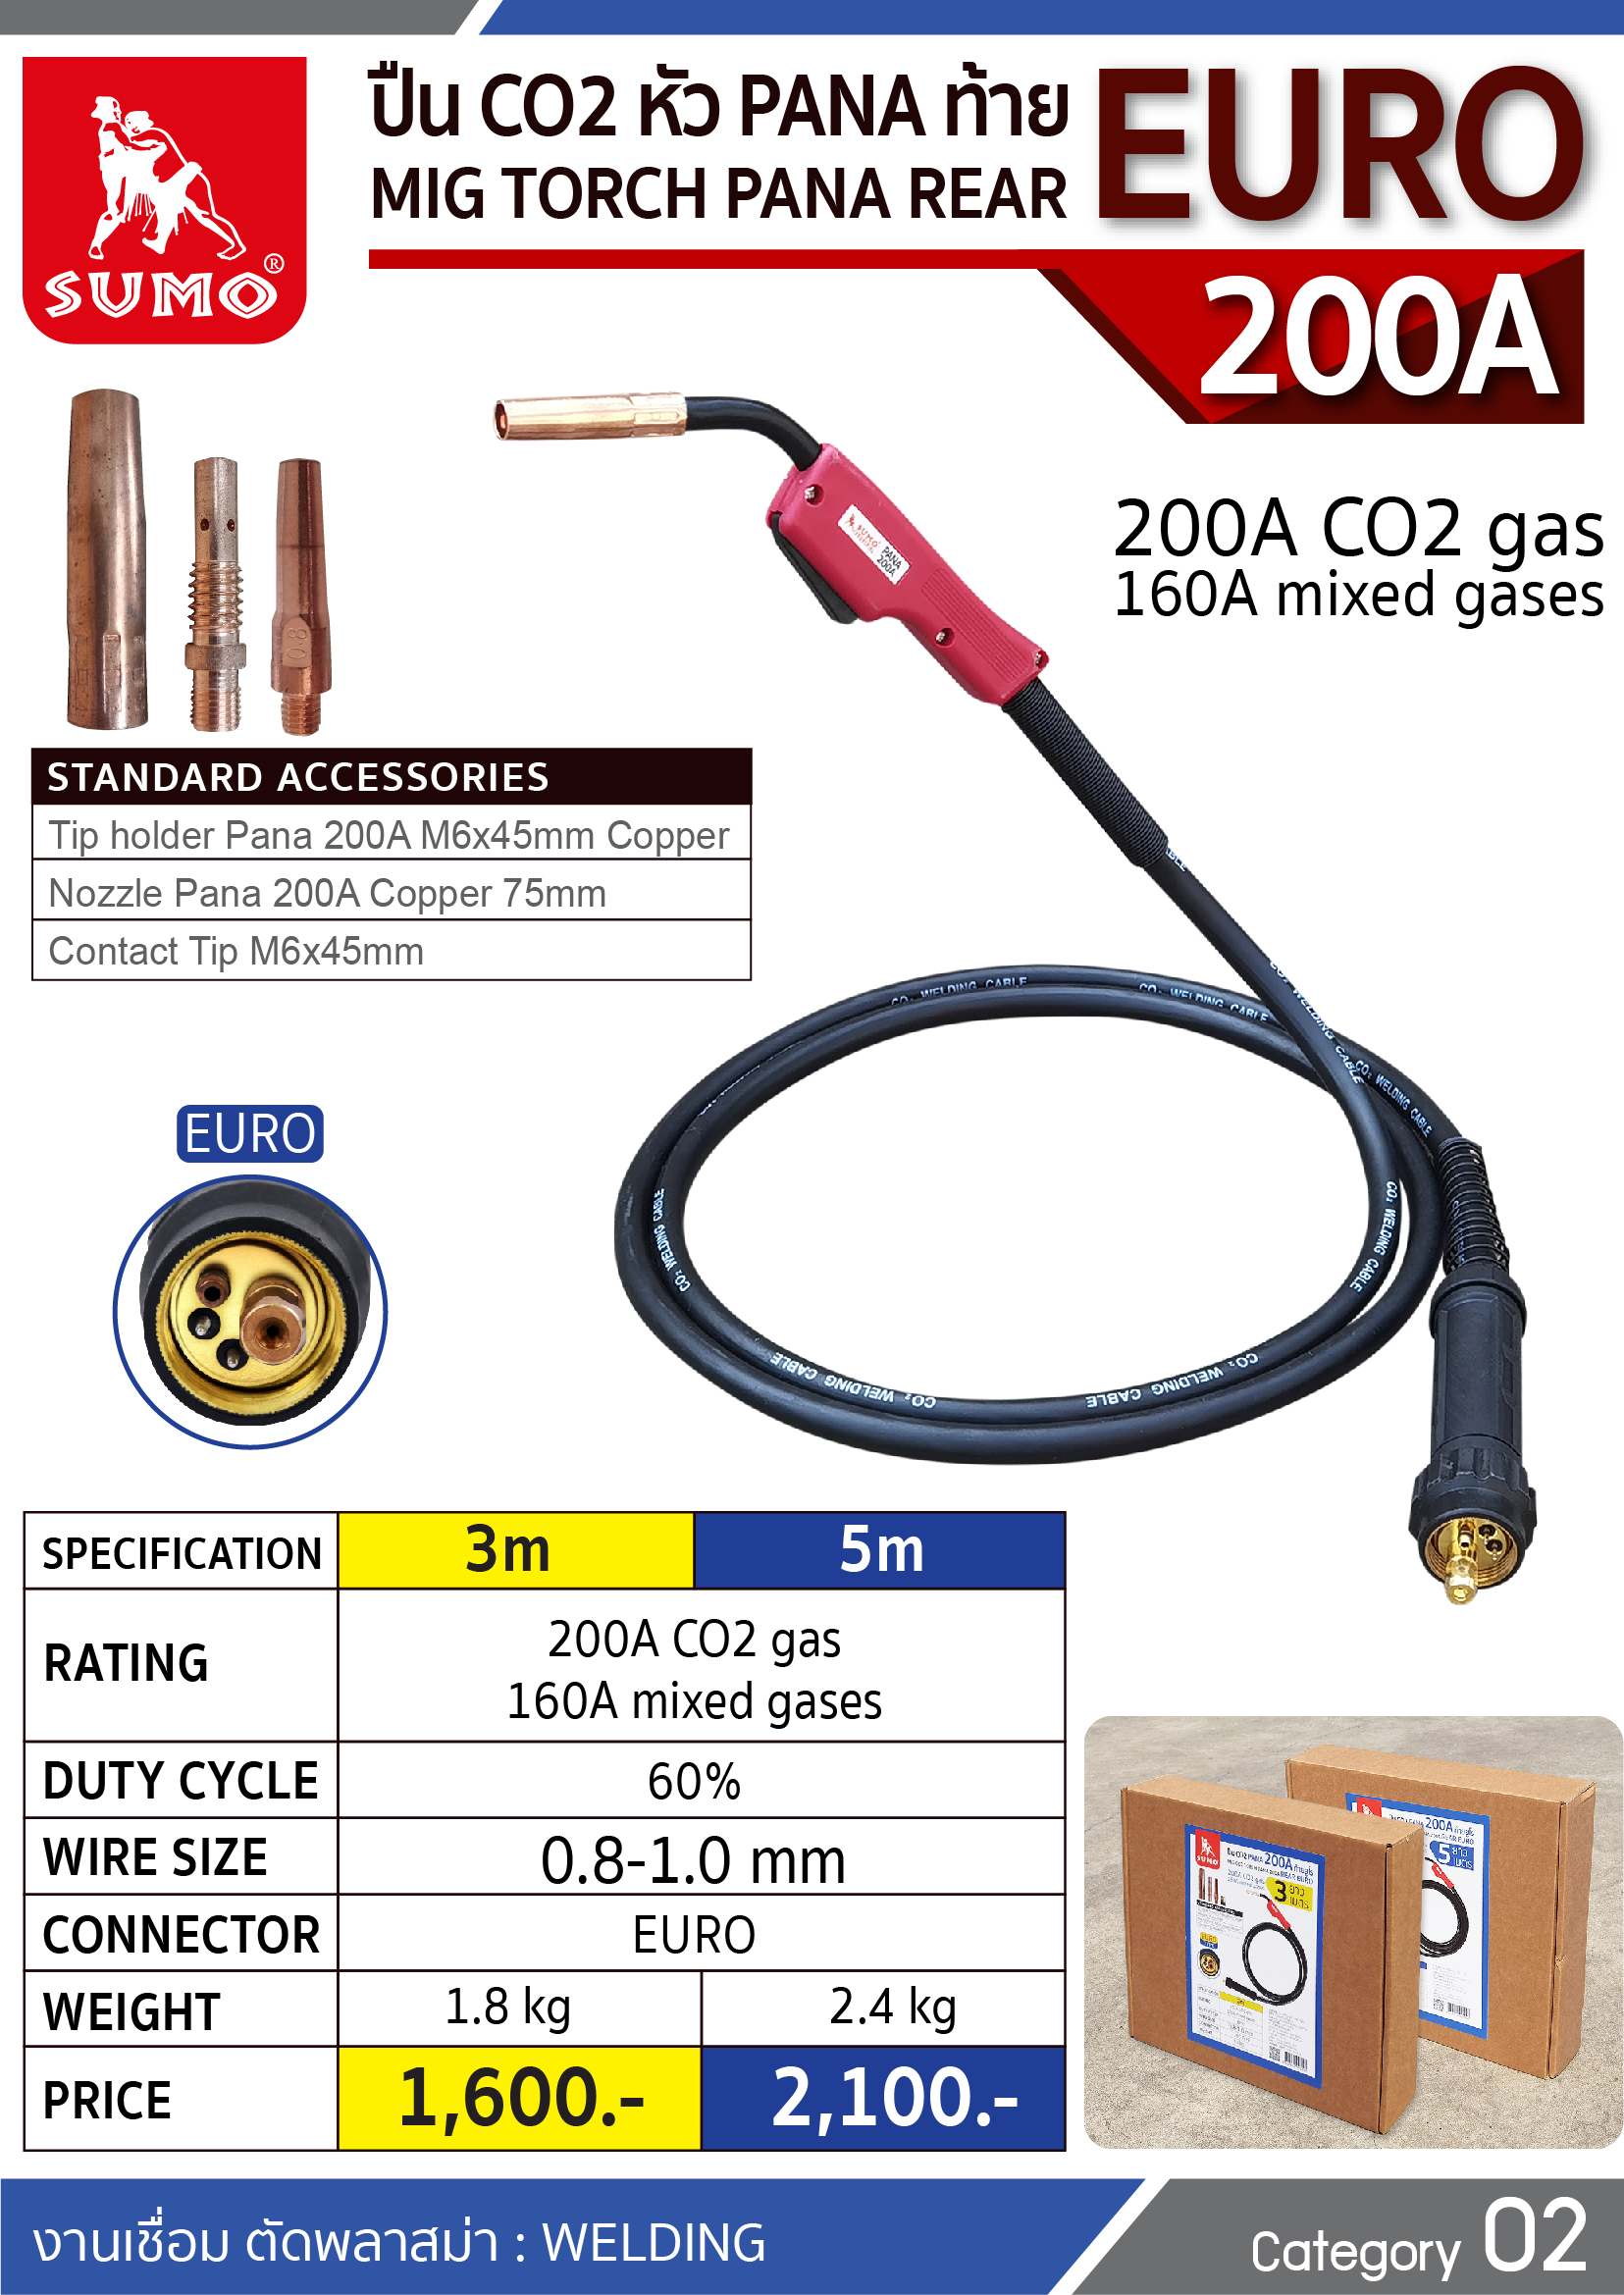 (23/321) ปืน CO2 PANA 200A EURO Tail